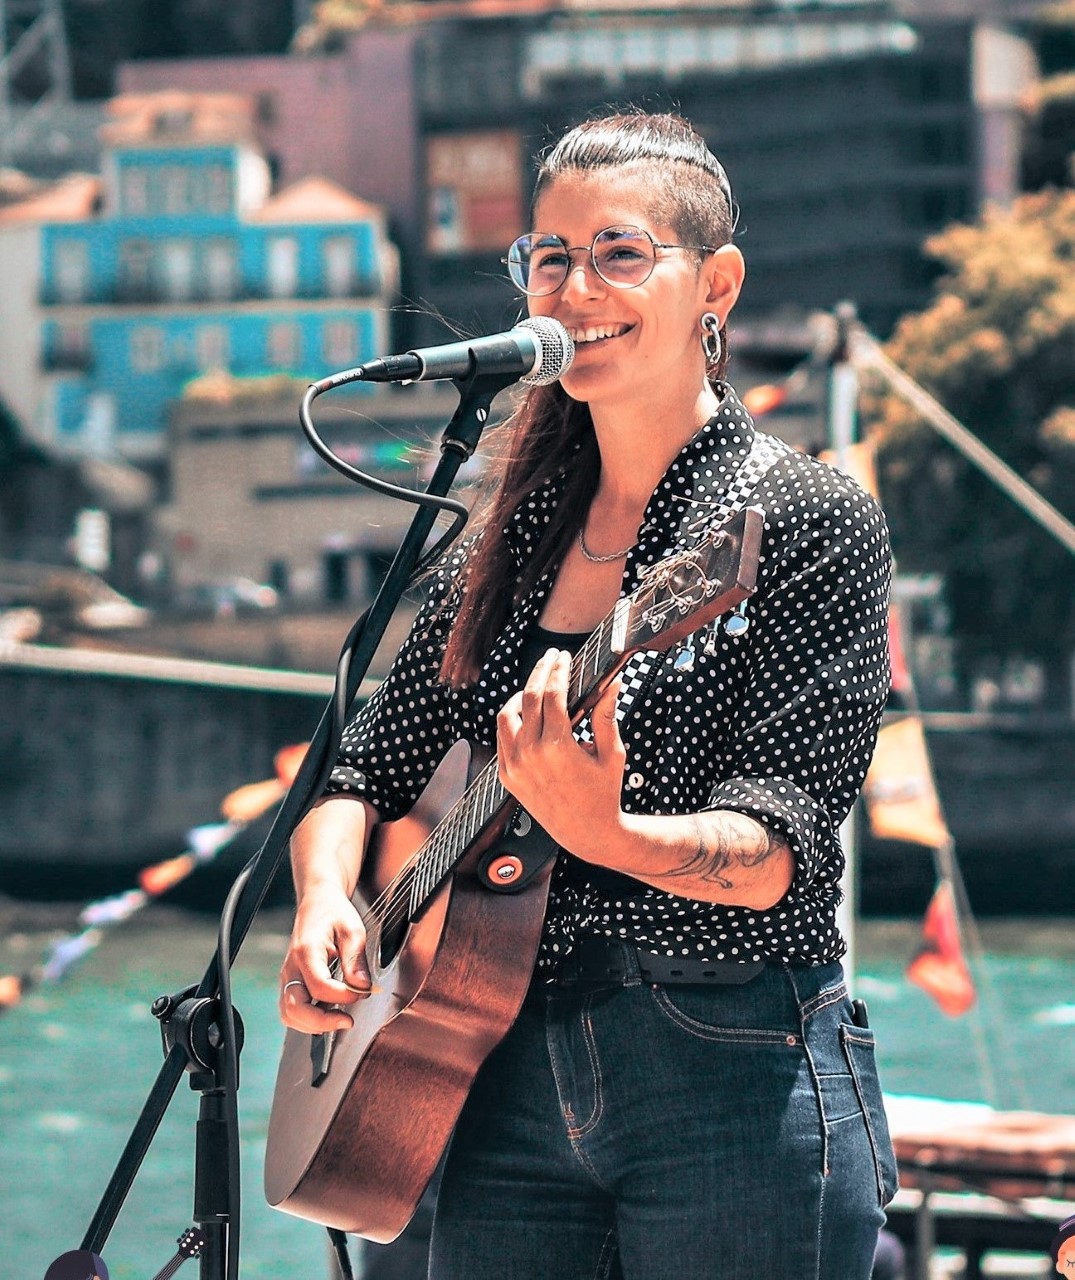 Cantora Sourense Estrela Gomes Em Tour Europeia De Festivais E Brevemente Lança O Seu EP De Originais